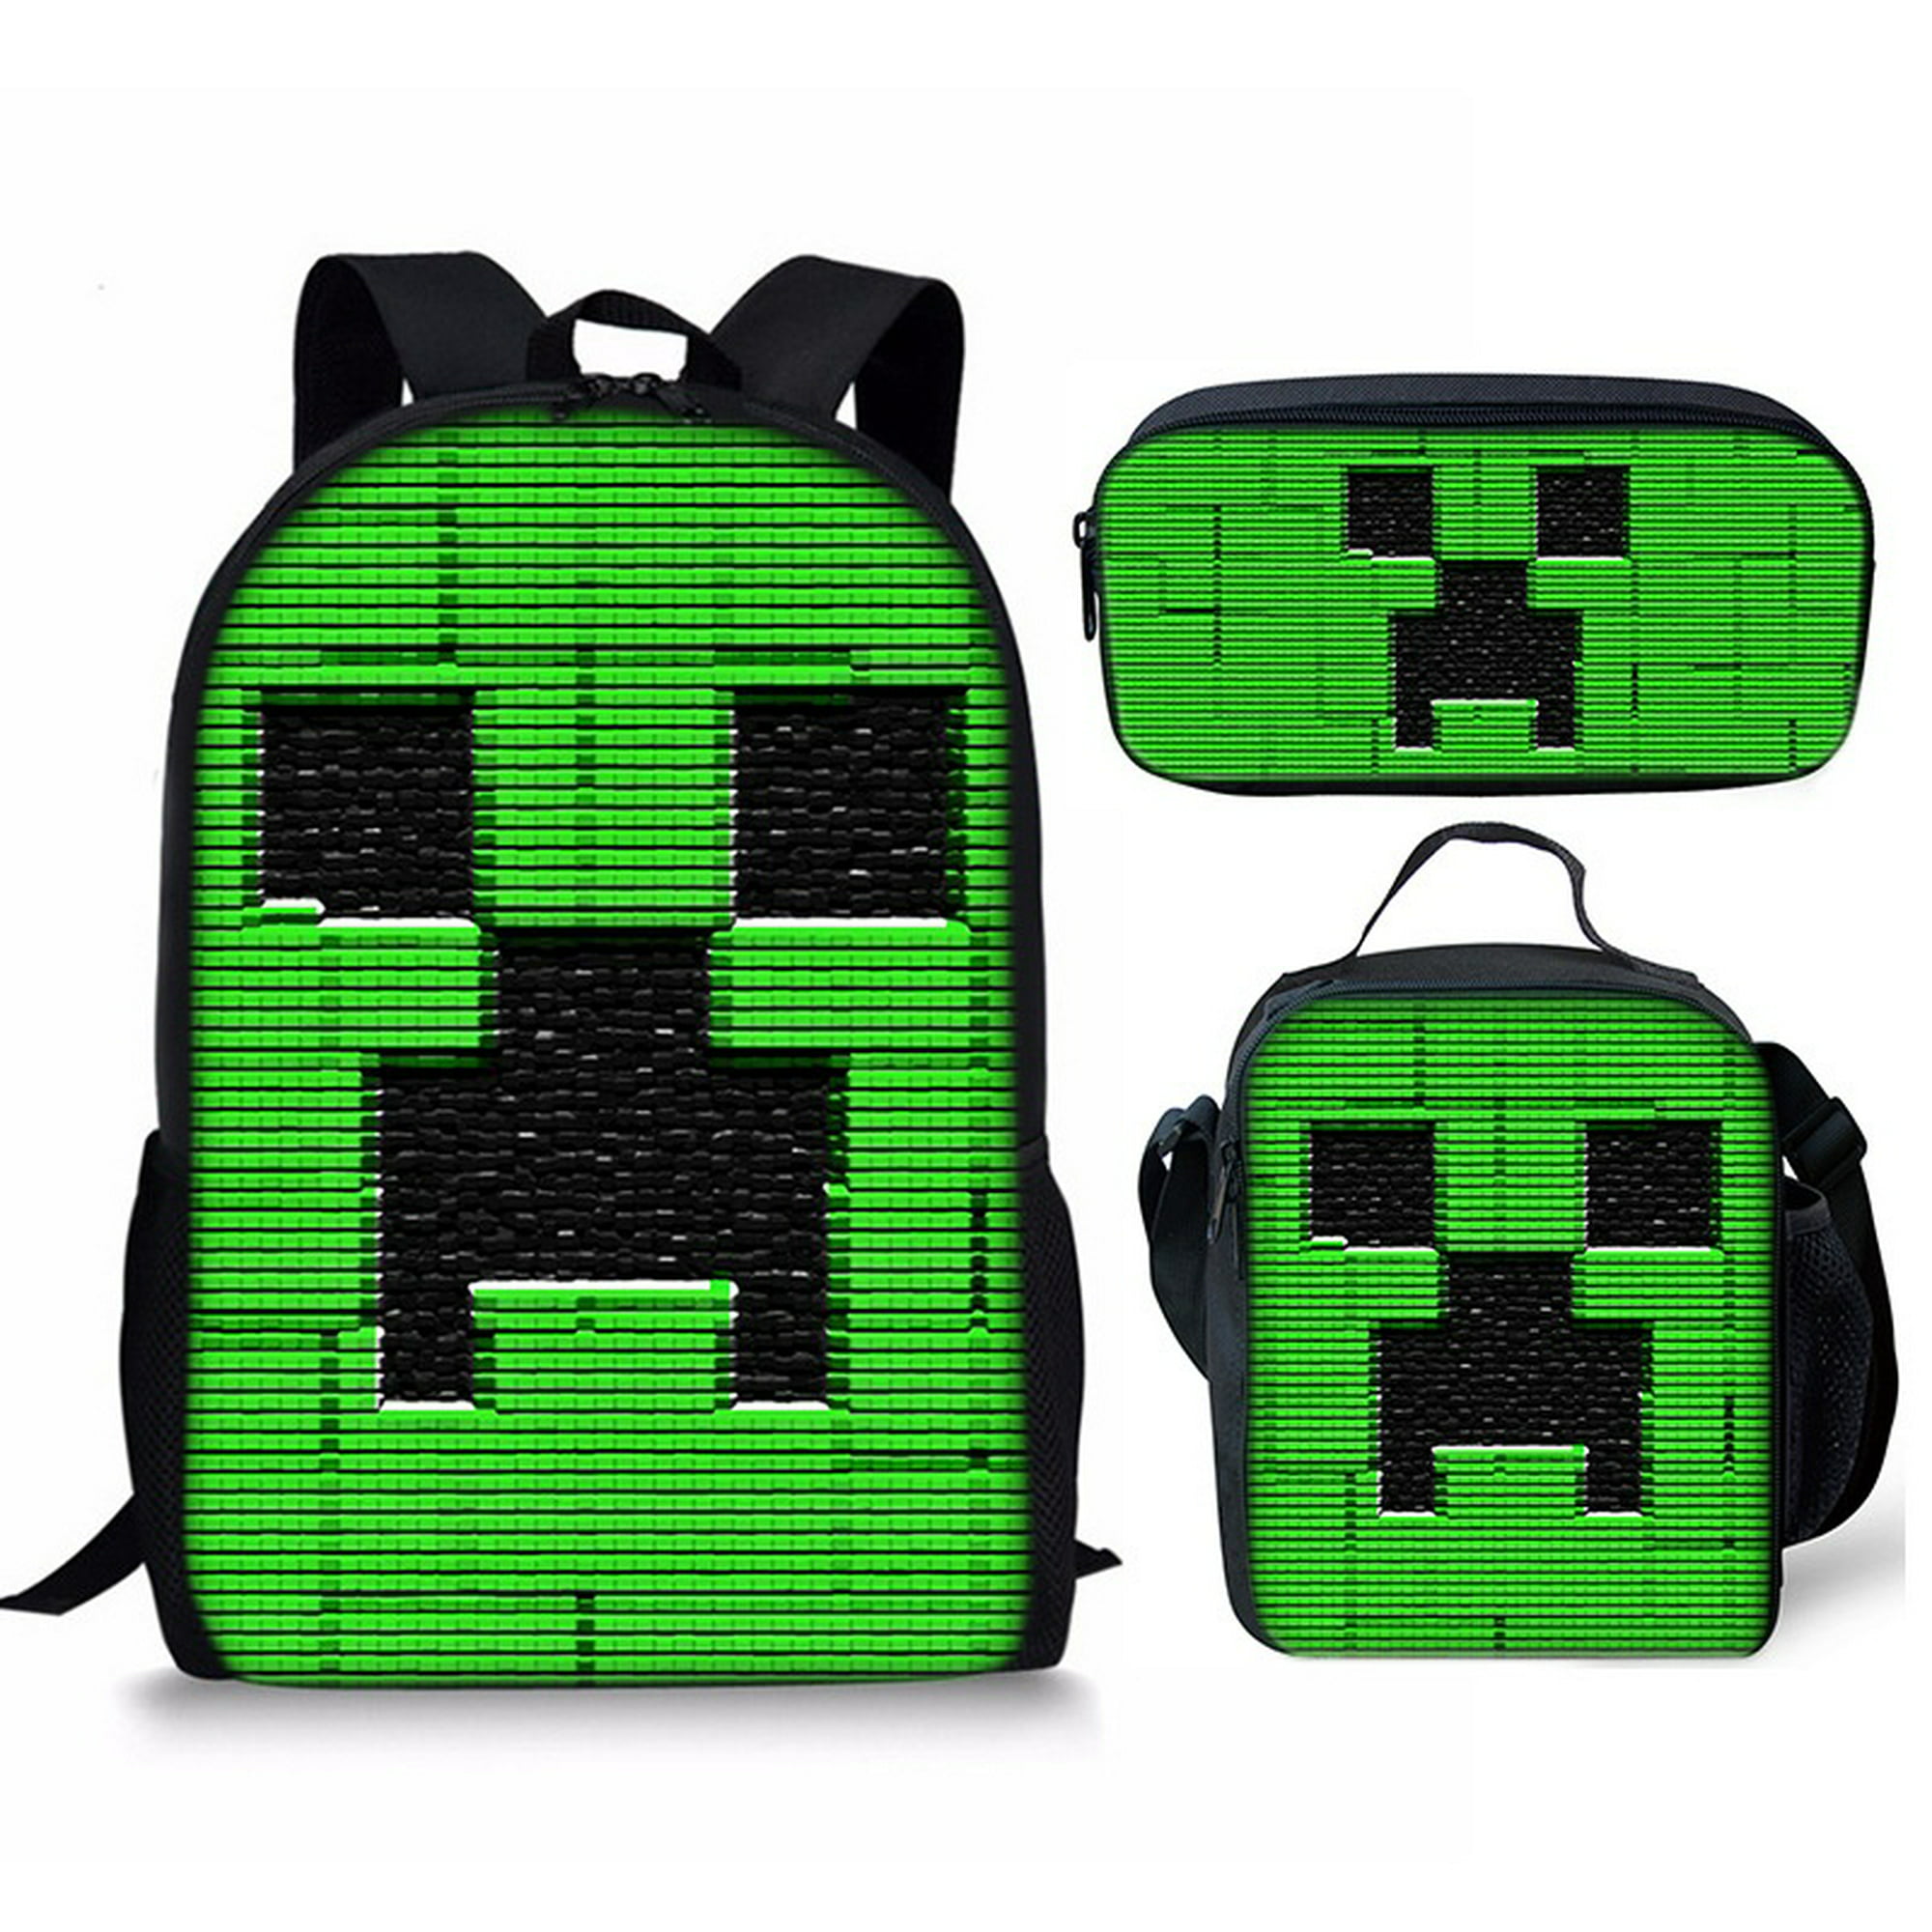 Juego de mochila Minecraft para niños Minecraft 4 piezas